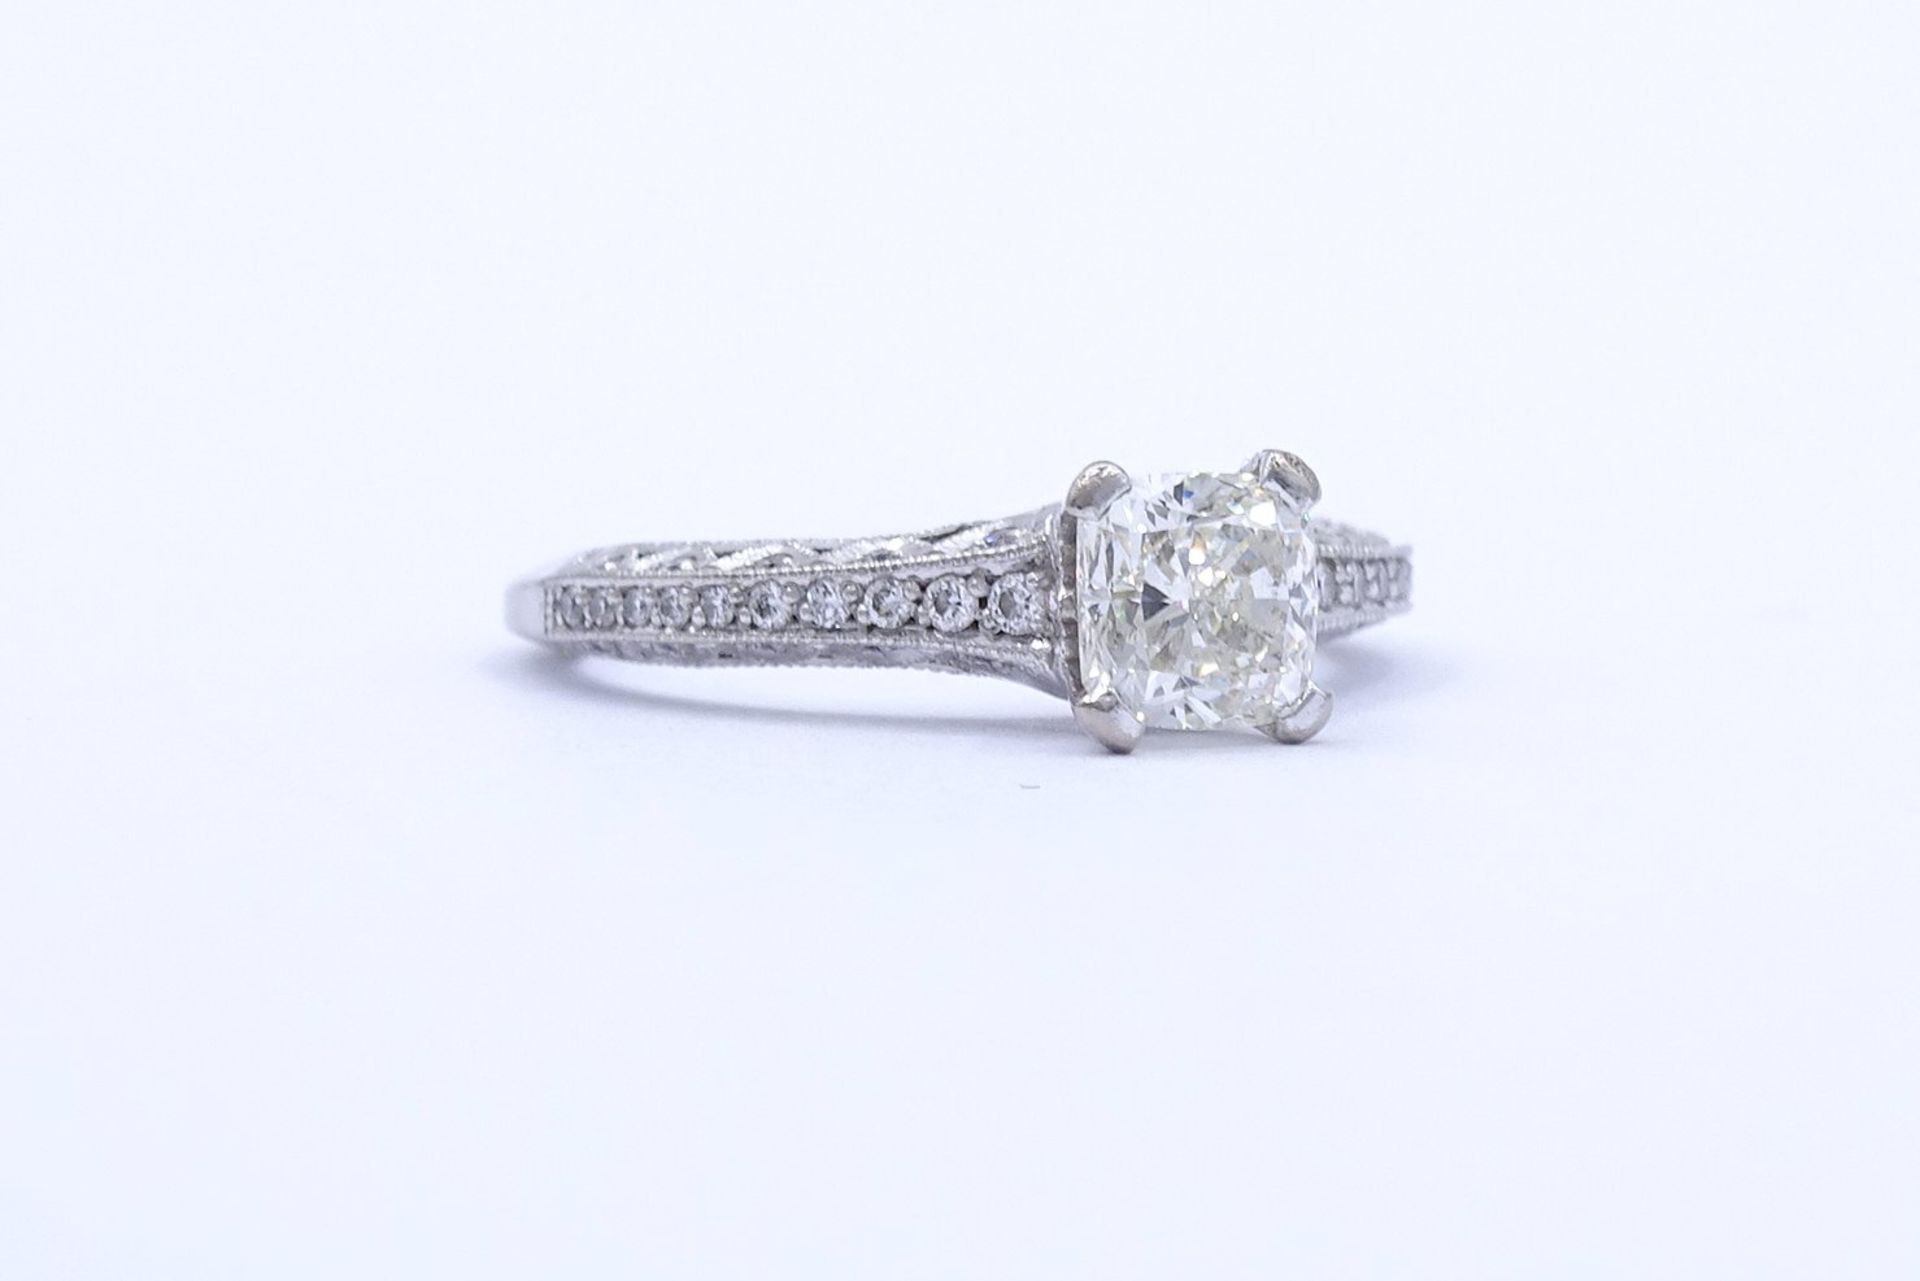 Princess Cut Ring - Verlobungsring , Princess 1,0ct., und 47 kl. Diamanten si, G-H, WG 18K "Tacori" - Image 9 of 20